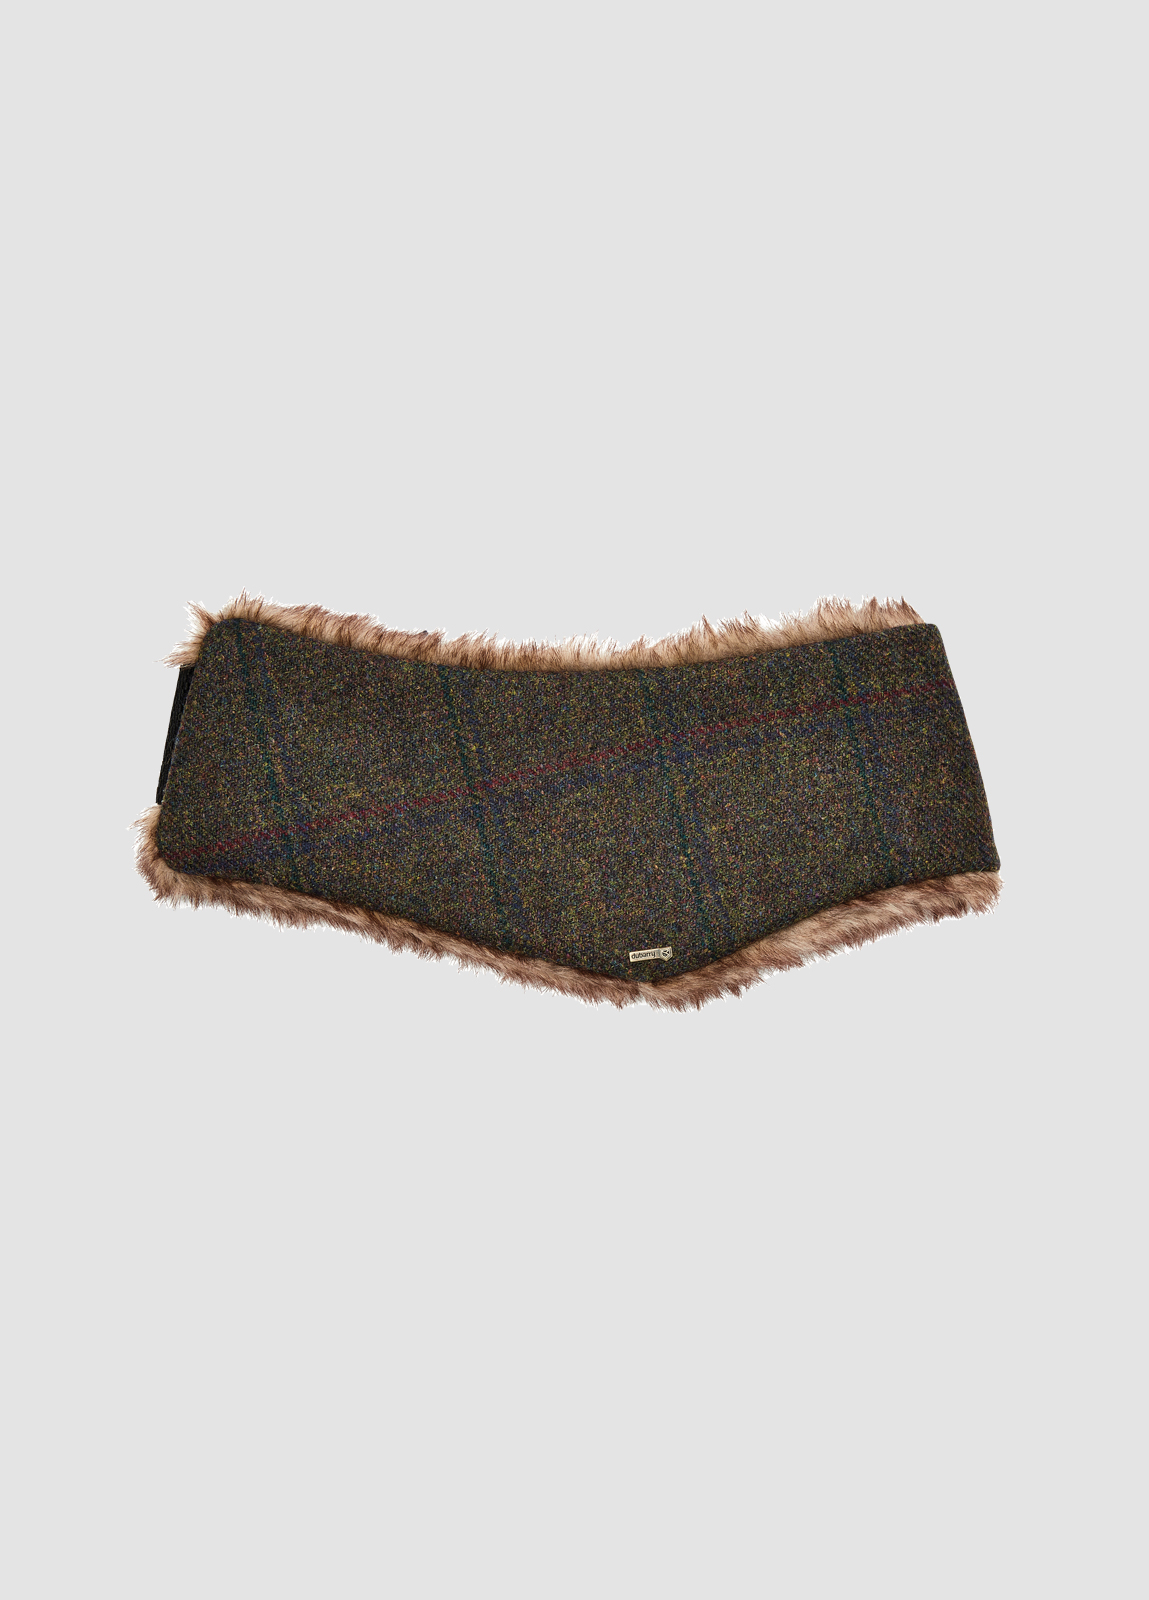 Moher Tweed Headband - Hemlock